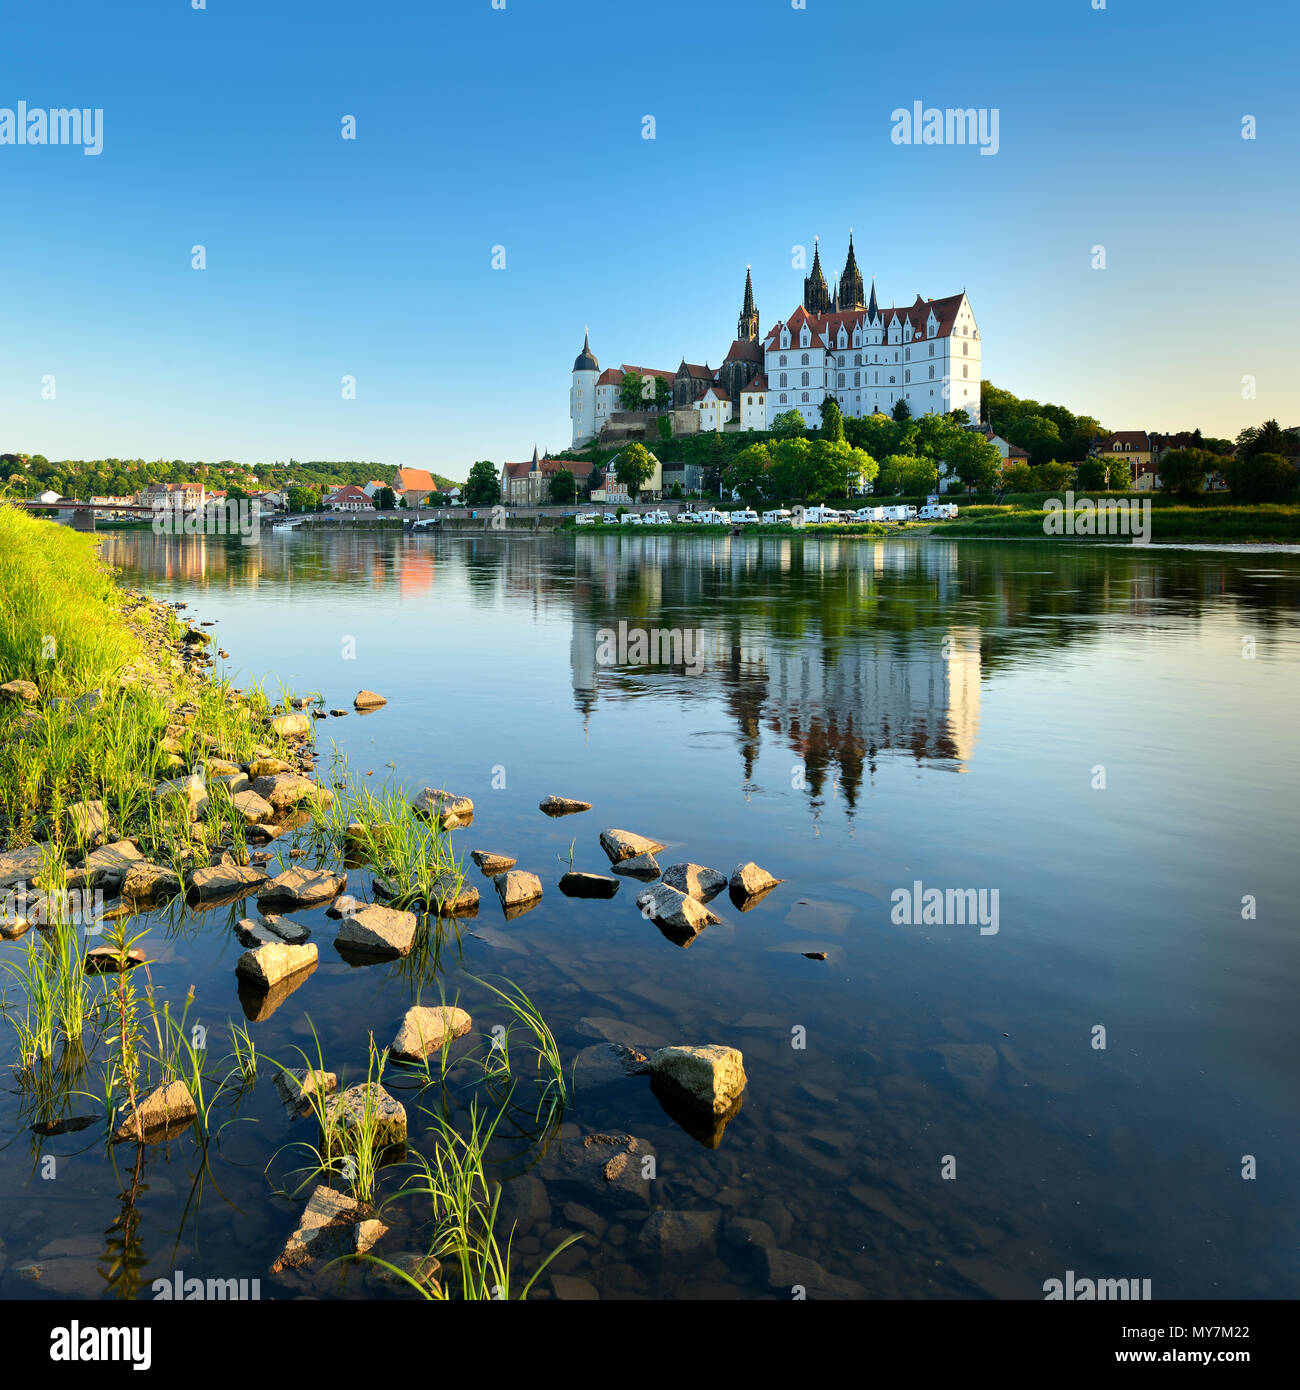 La collina del castello con la cattedrale e il castello di Albrechtsburg è riflessa nel fiume Elba, Meissen, Bassa Sassonia, Germania Foto Stock